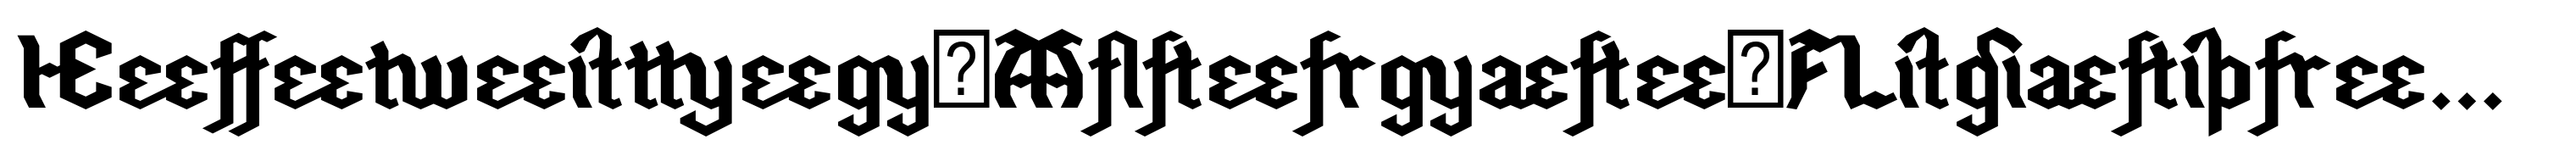 Hefeweizen-Alternate-Ligatures-DTD